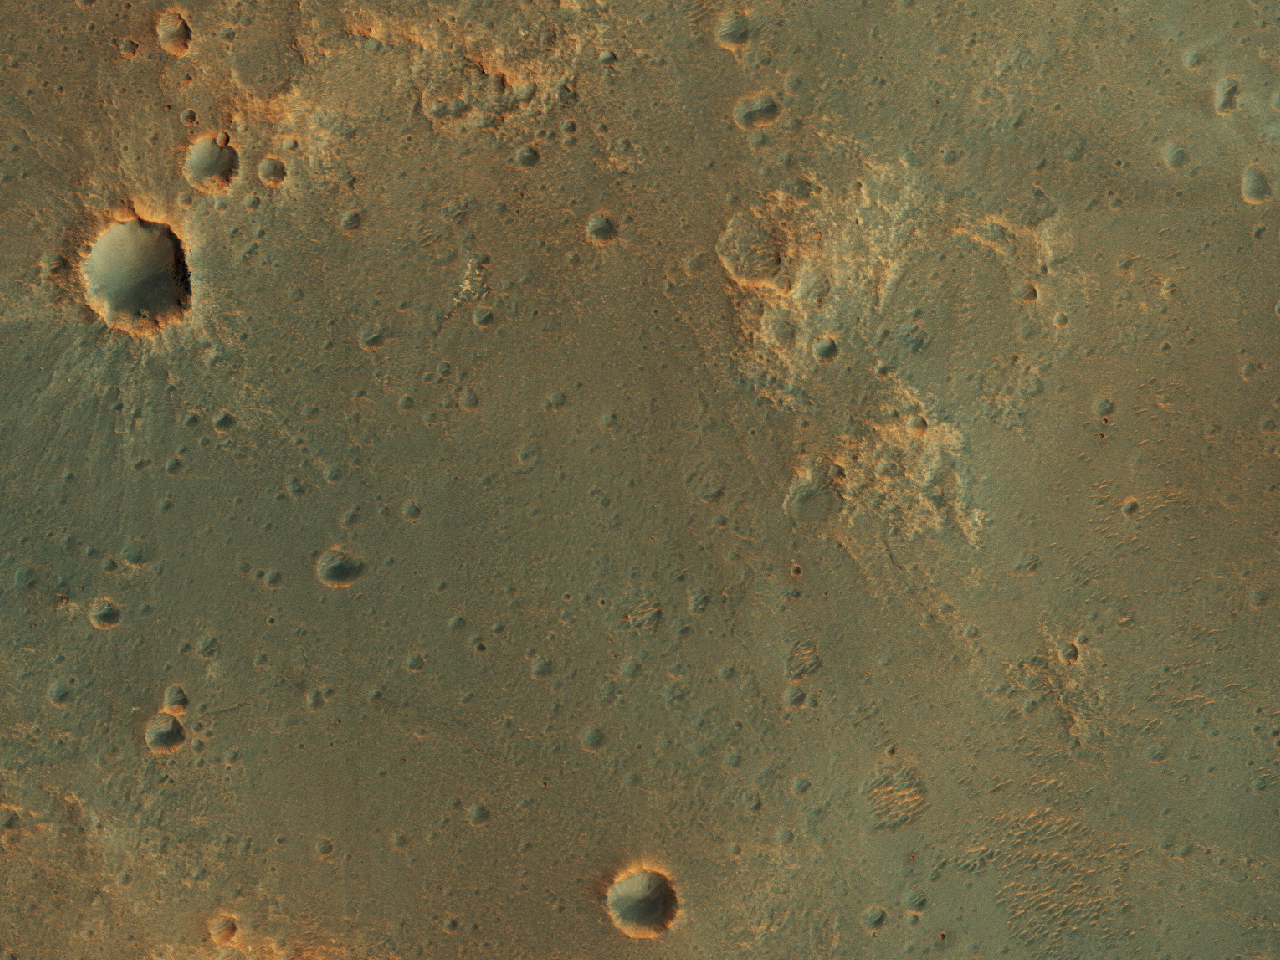 Mogelijke landingsplaats van de ExoMars missie in Oxia Palus